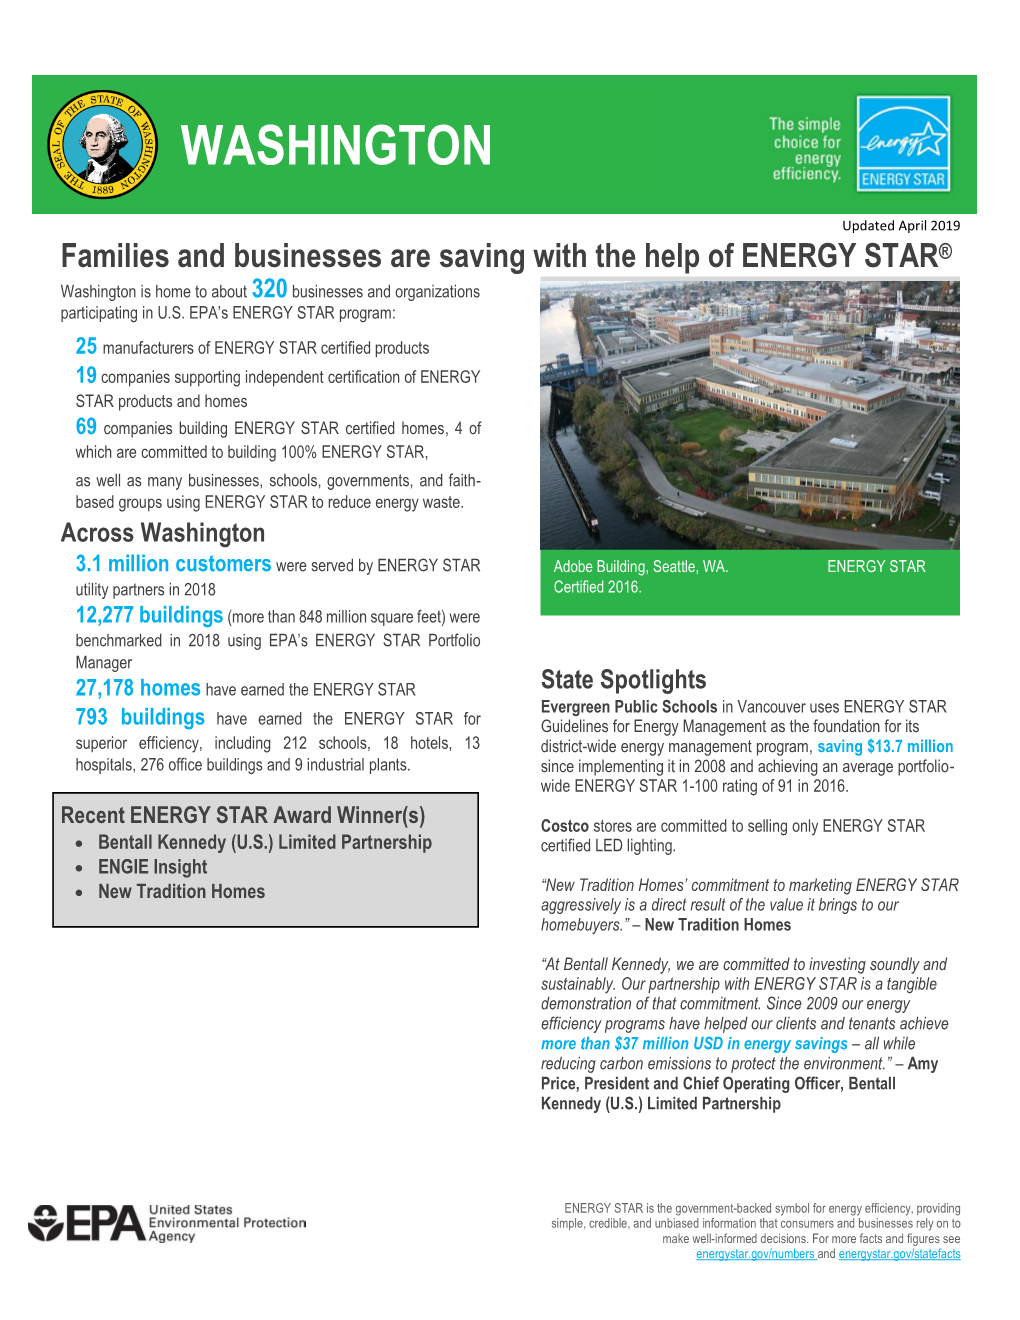 Energy Star State Fact Sheet: Washington